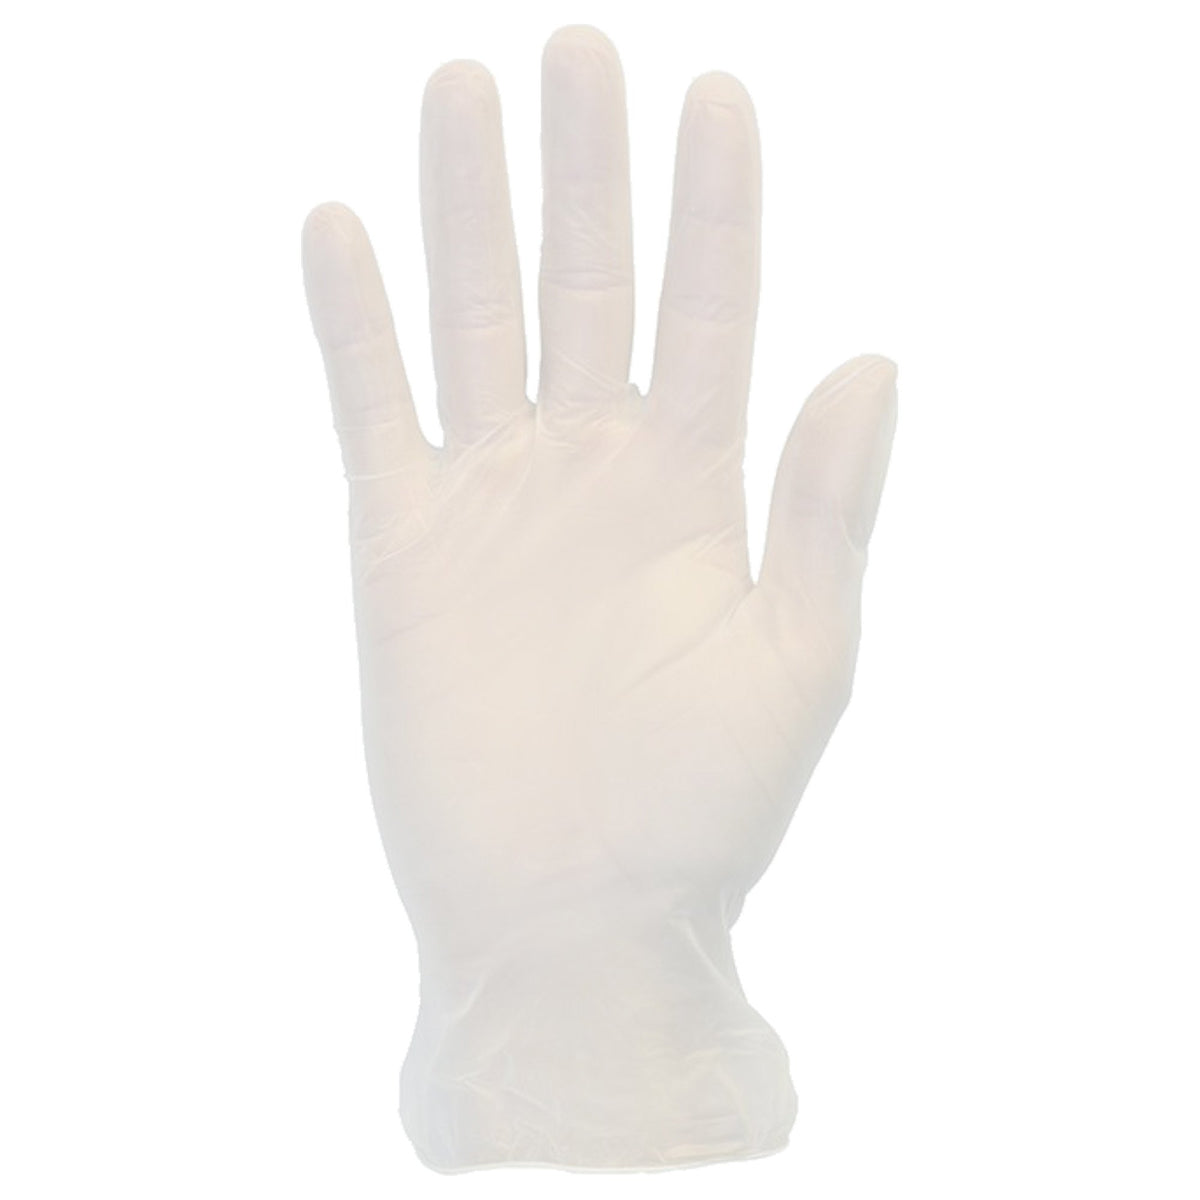 Disposable Vinyl Gloves - 4 Mil. 1 bx/100 gloves